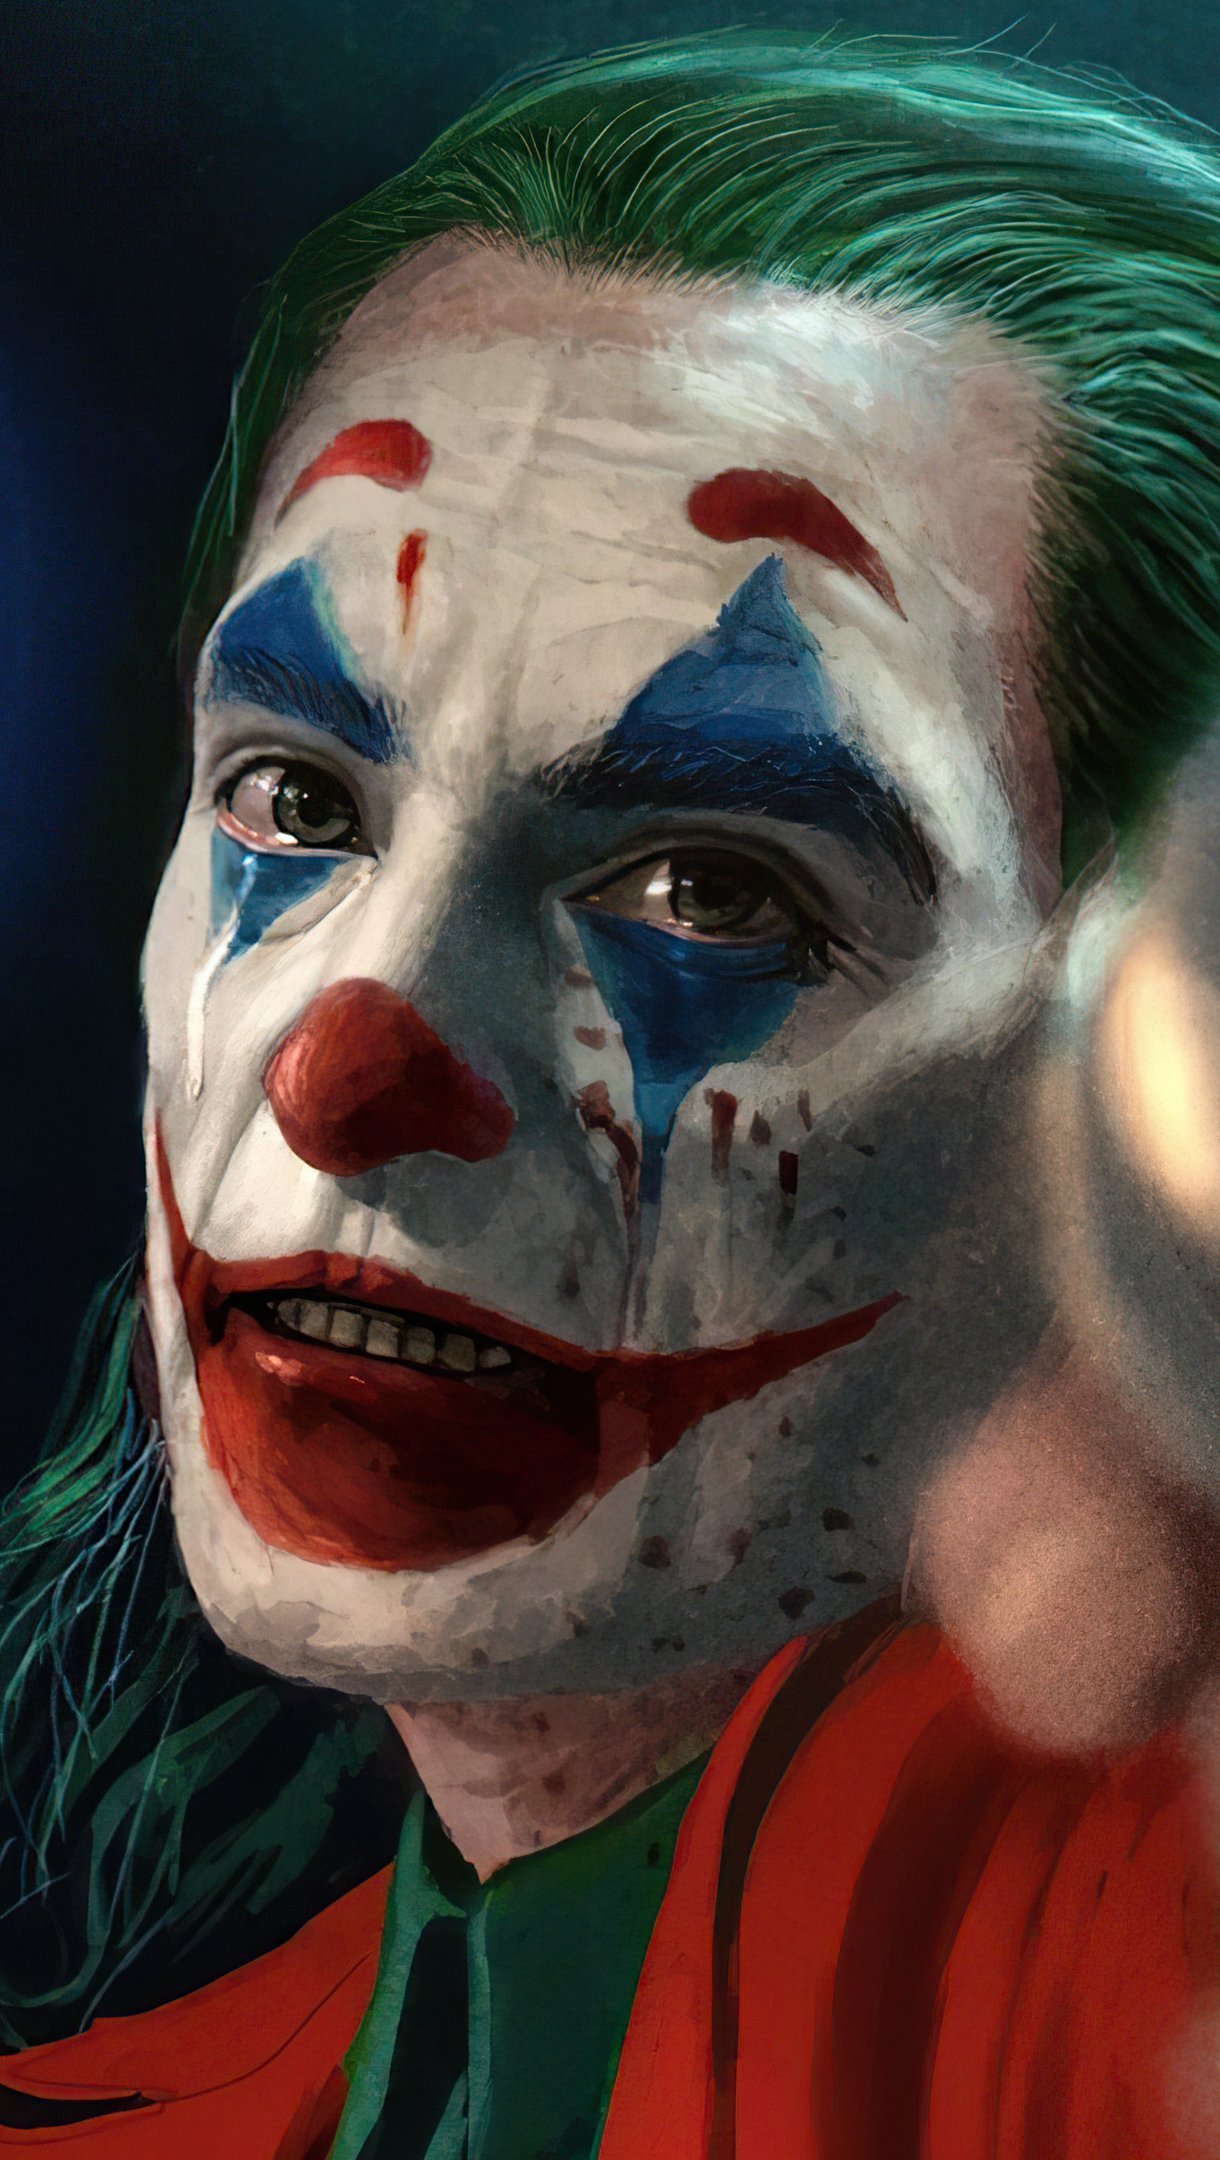 Joaquin Phoenix In Joker 2019 4K Ultra HD Mobile Wallpaper